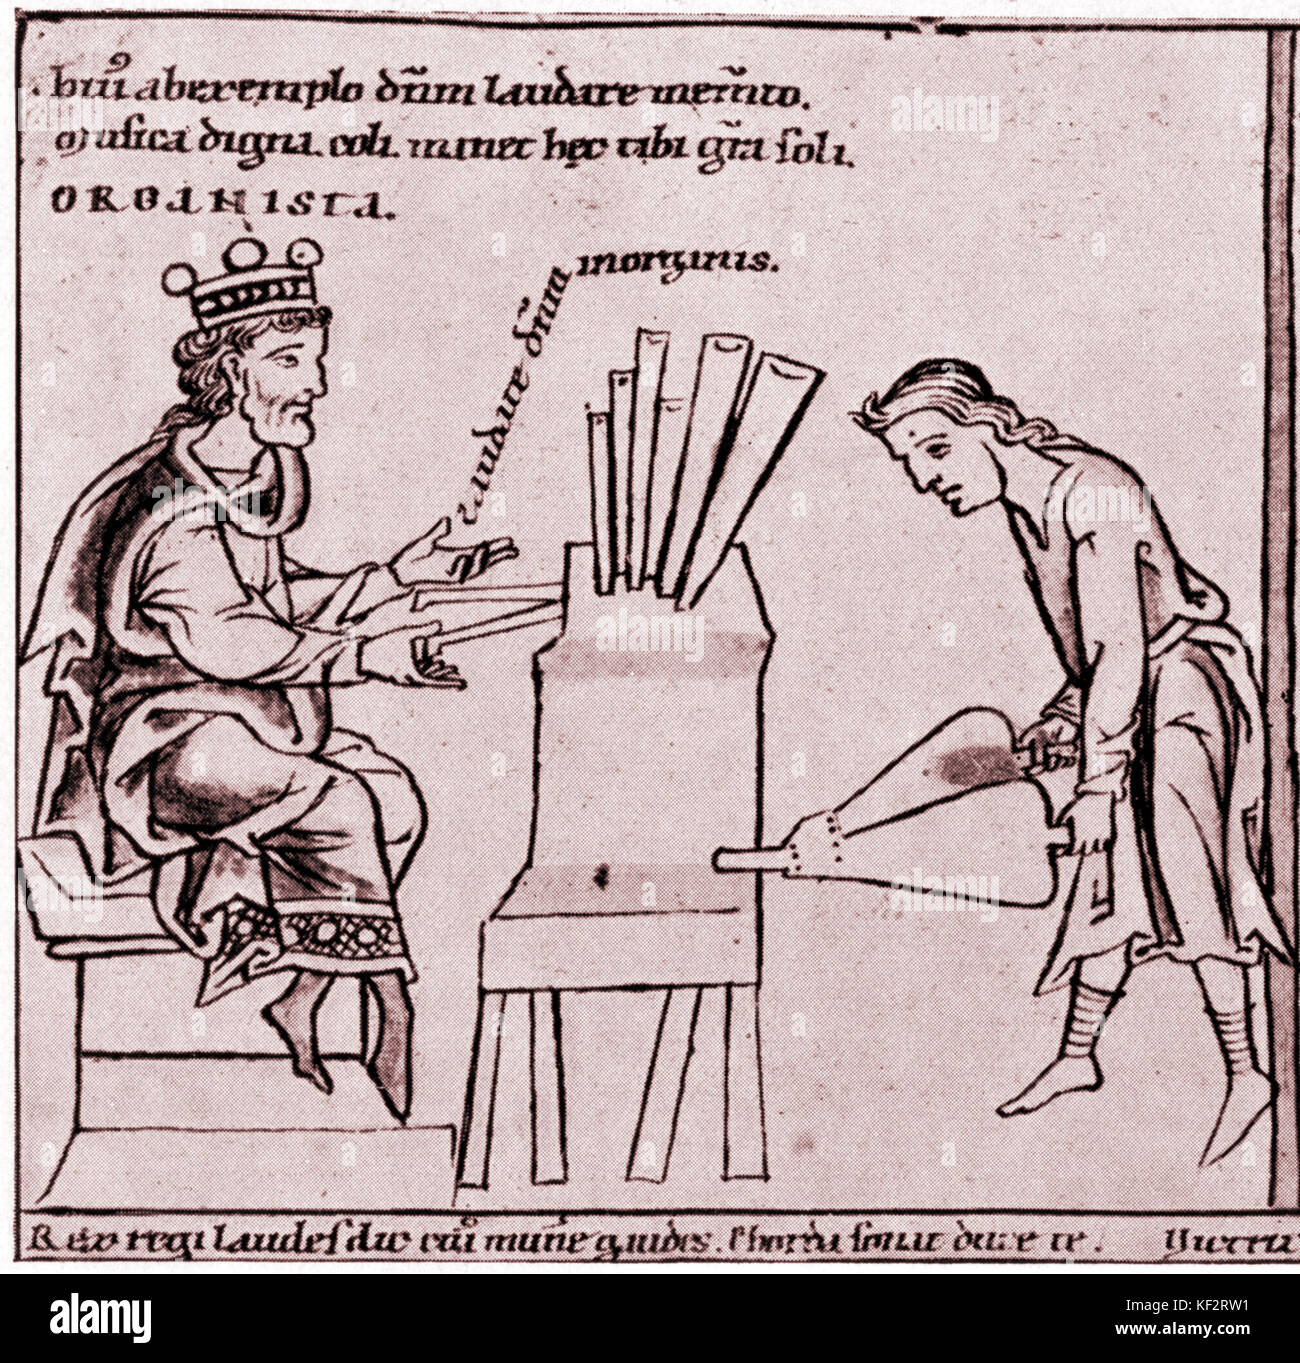 Mittelalter - Bilderhandschrift des Königs David als Organist, aus dem 13. Jahrhundert. Orgel ist mit Balg gepumpt. Bilderhandschrift aus Cod. Lat. Stockfoto